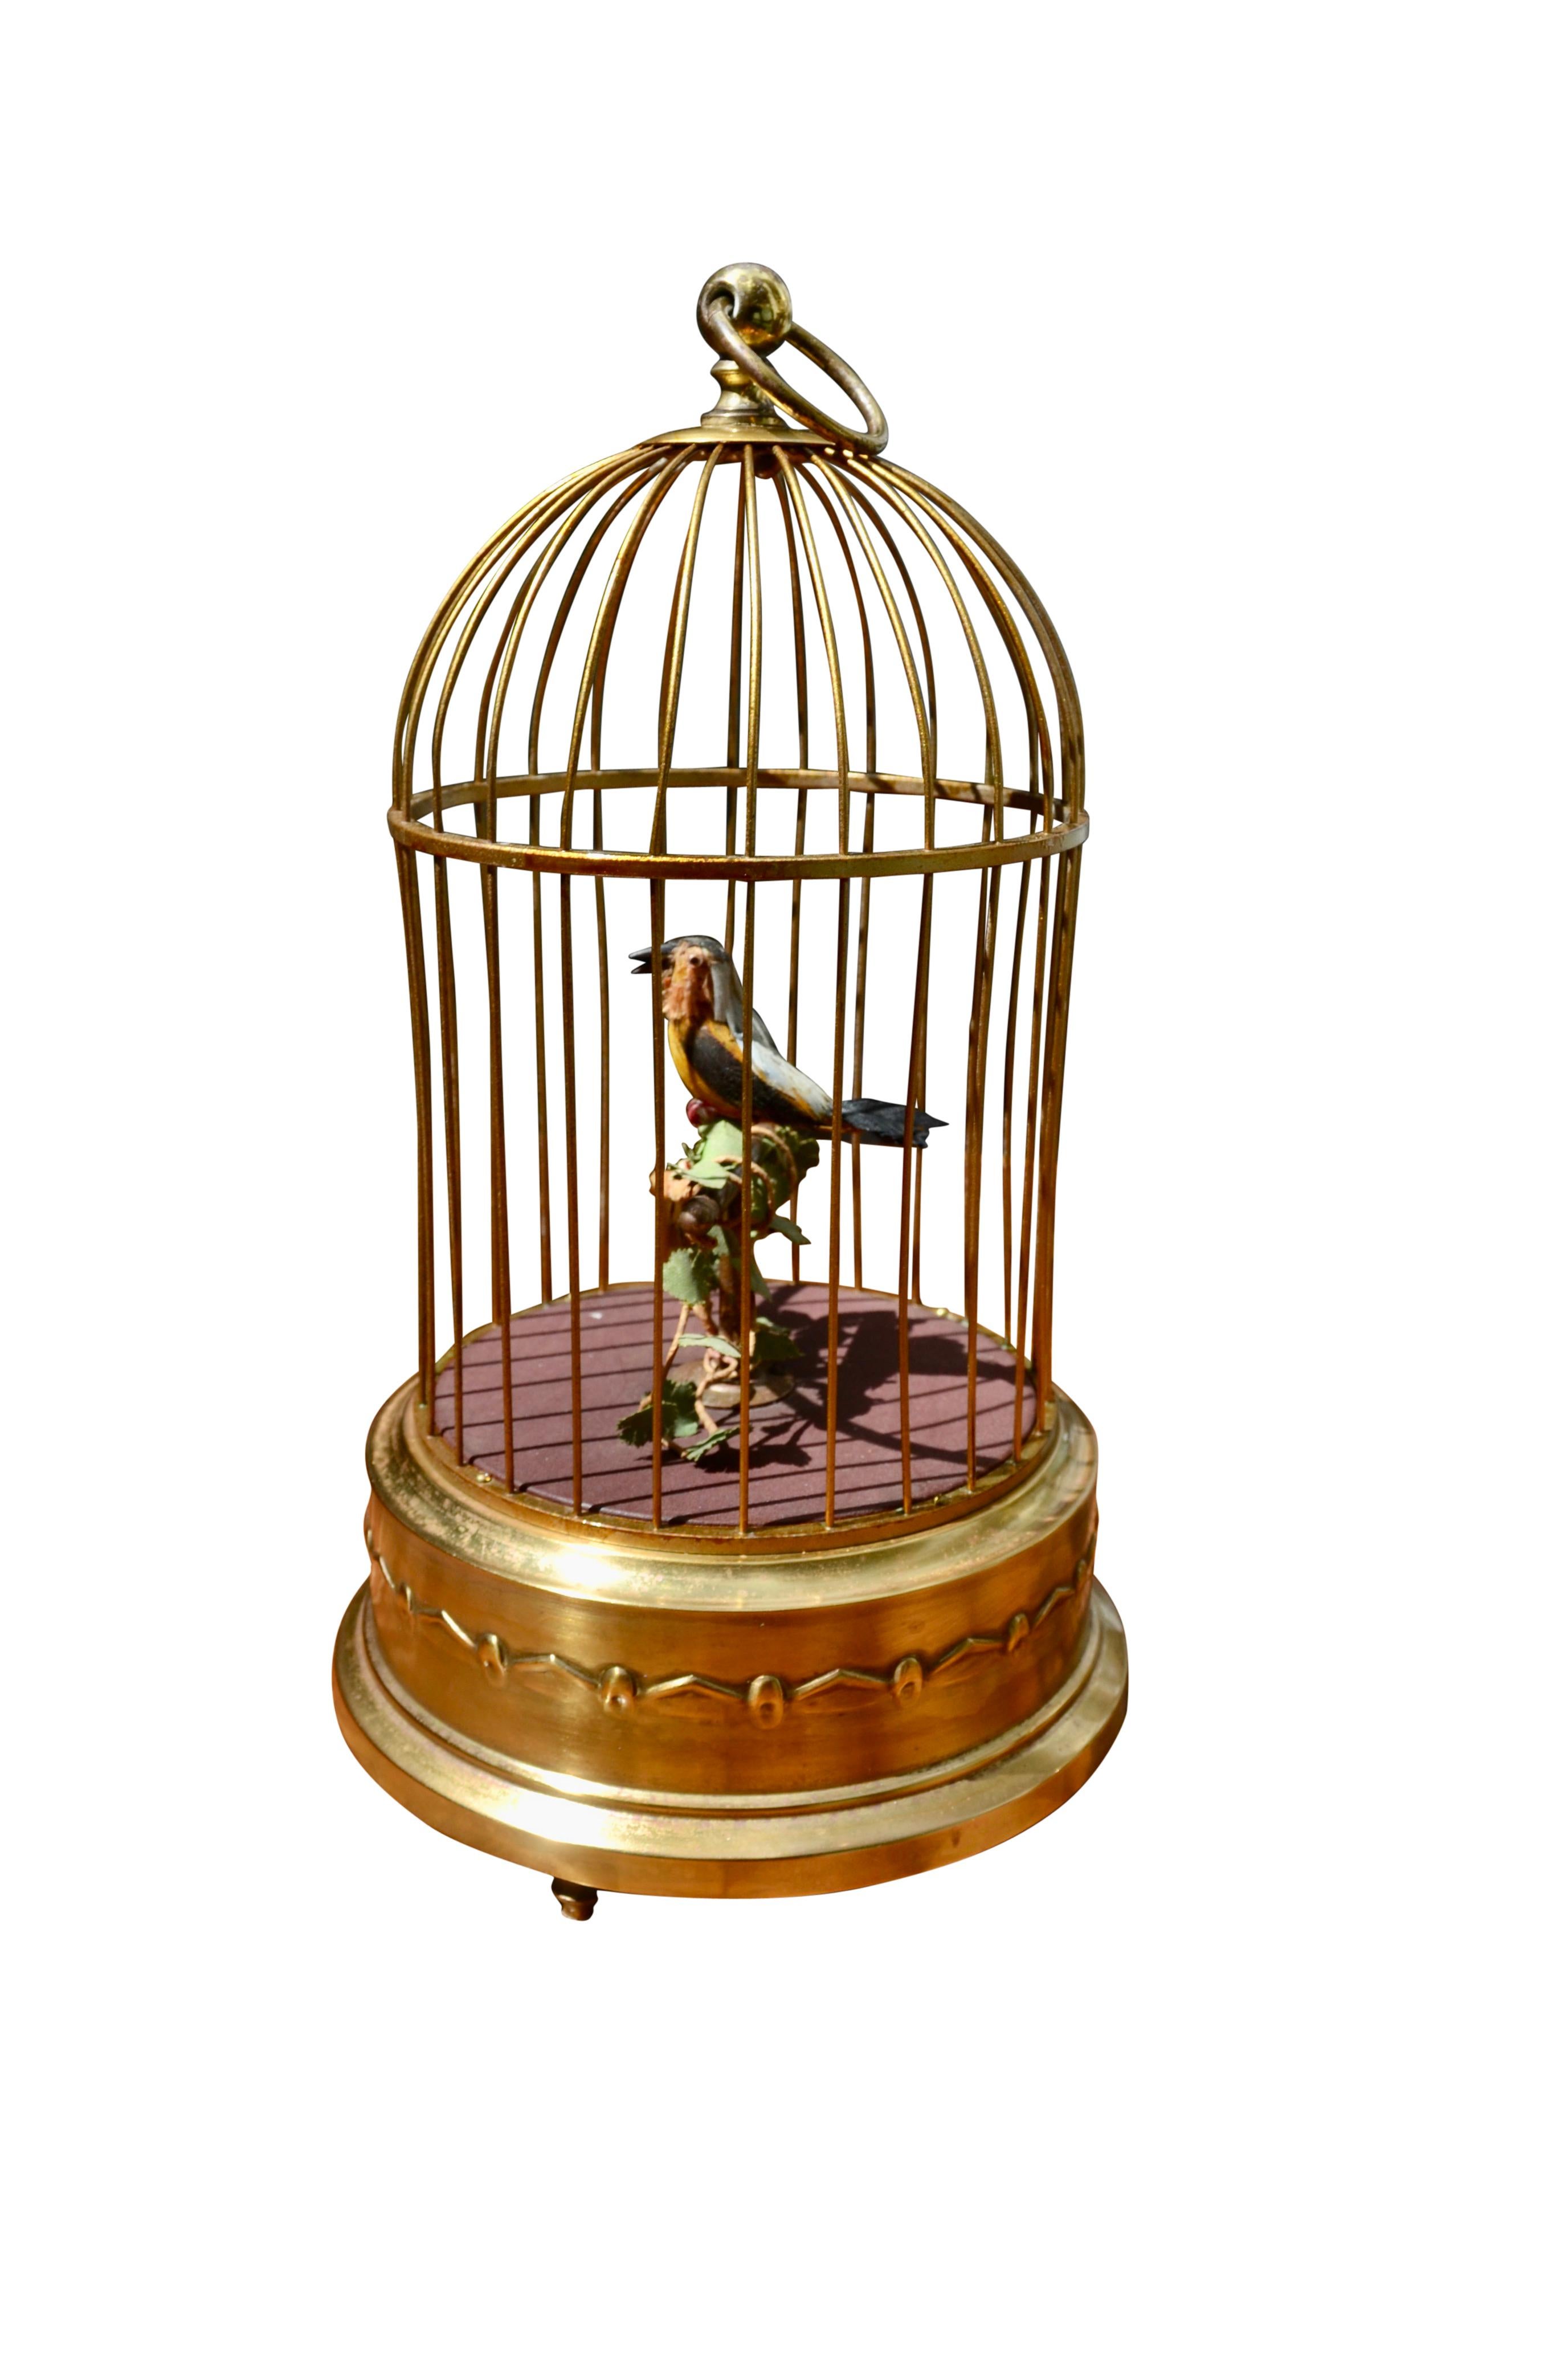 karl griesbaum singing bird cage